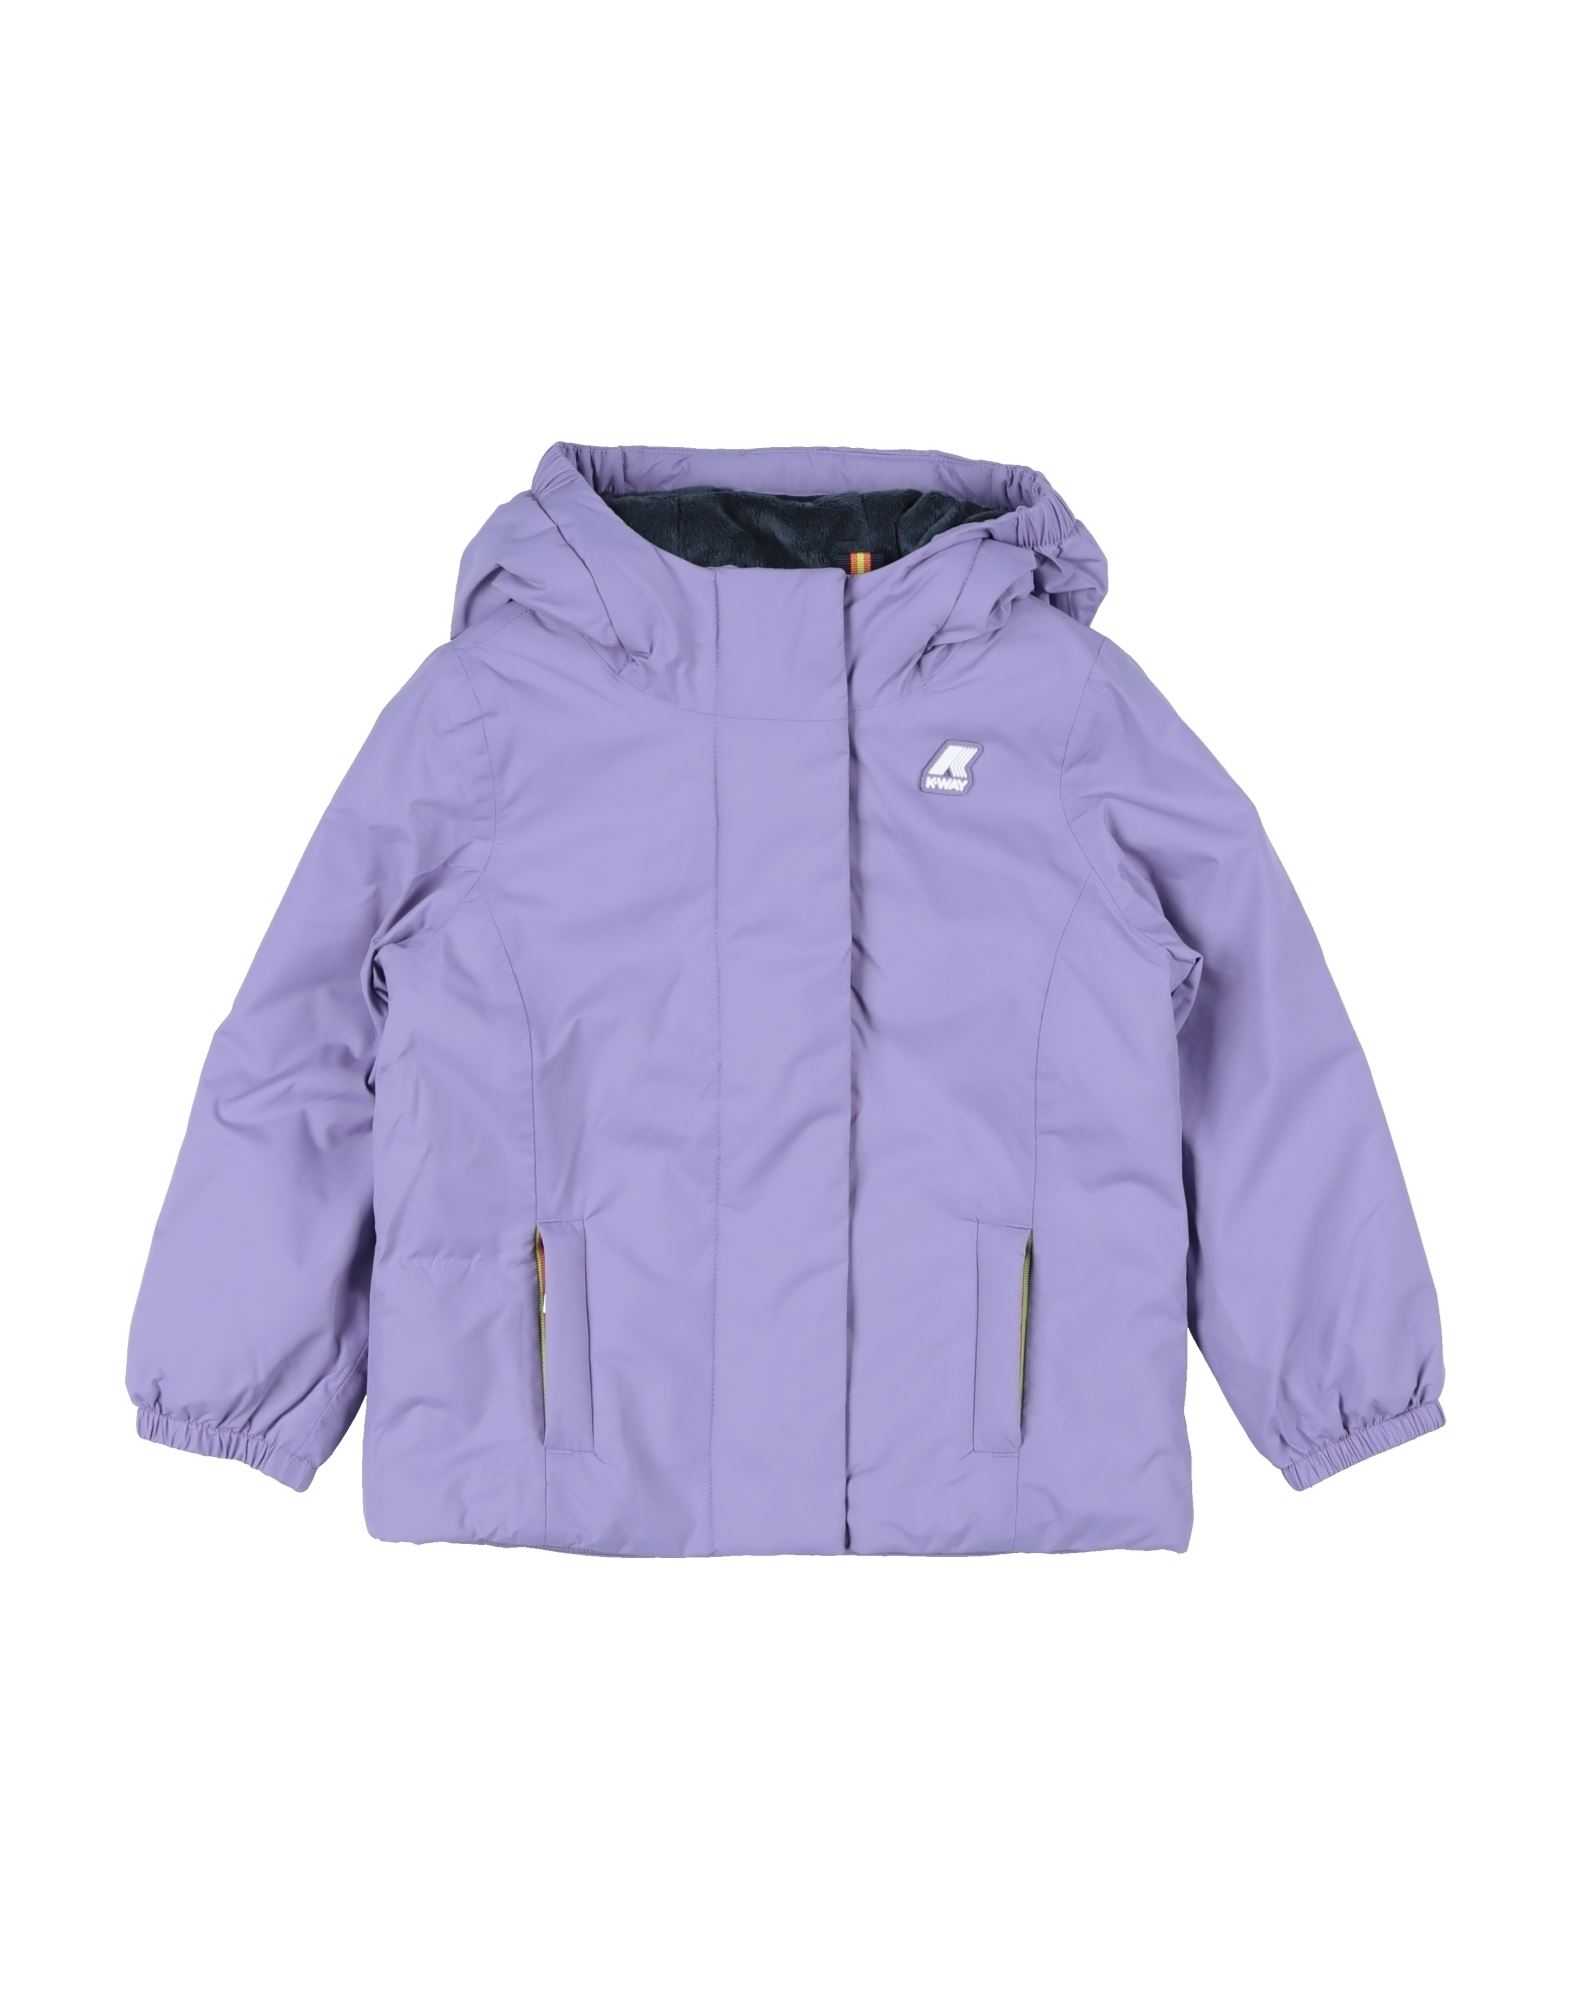 K-way Kids' Jackets In Purple